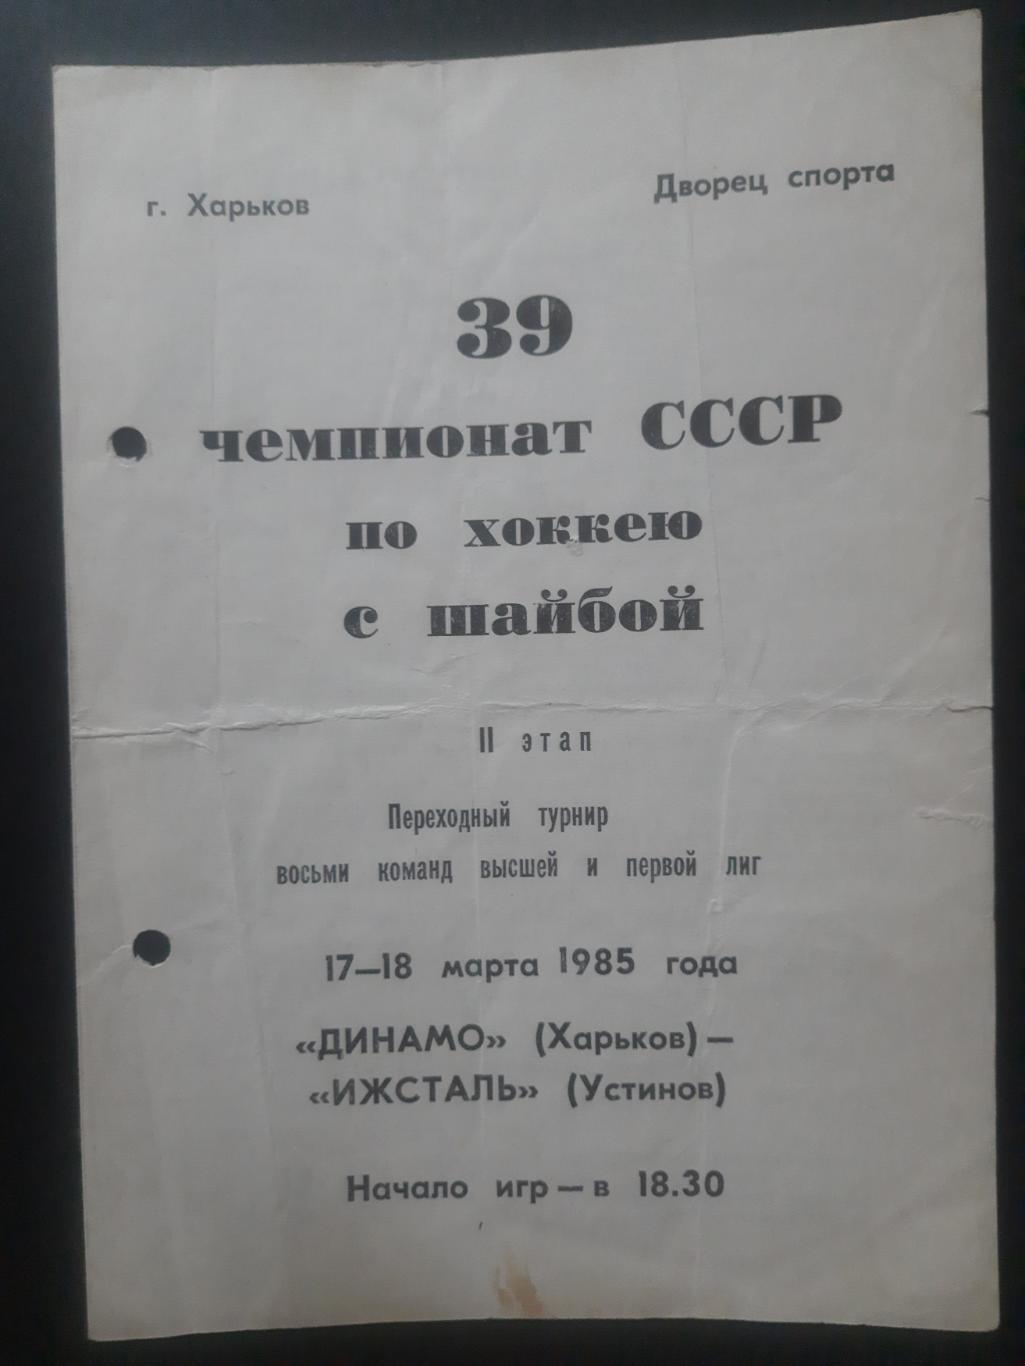 Динамо Харьков - Ижсталь Устинов 17-18.03.1985